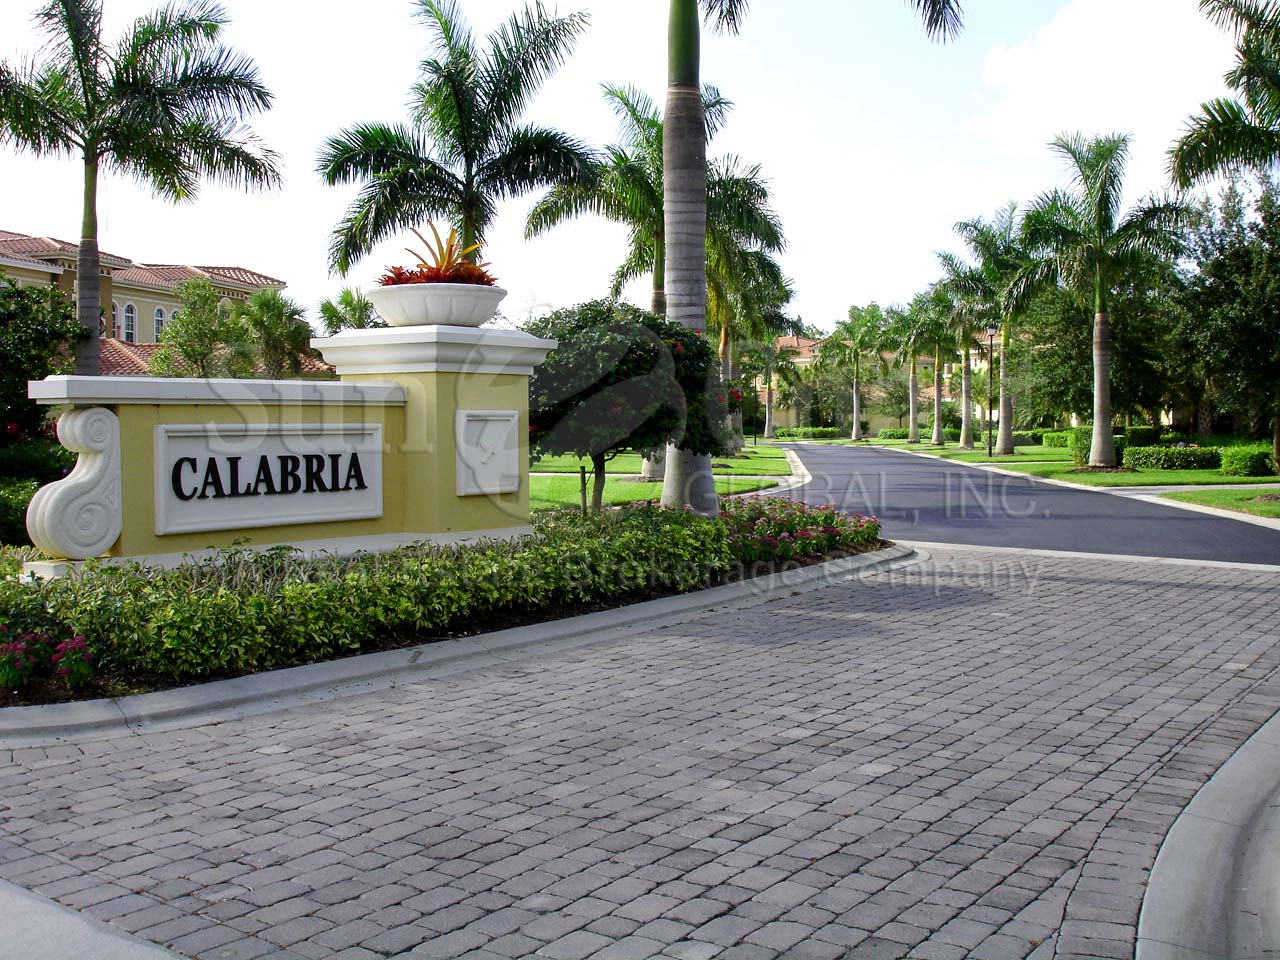 Calabria non gated entrance